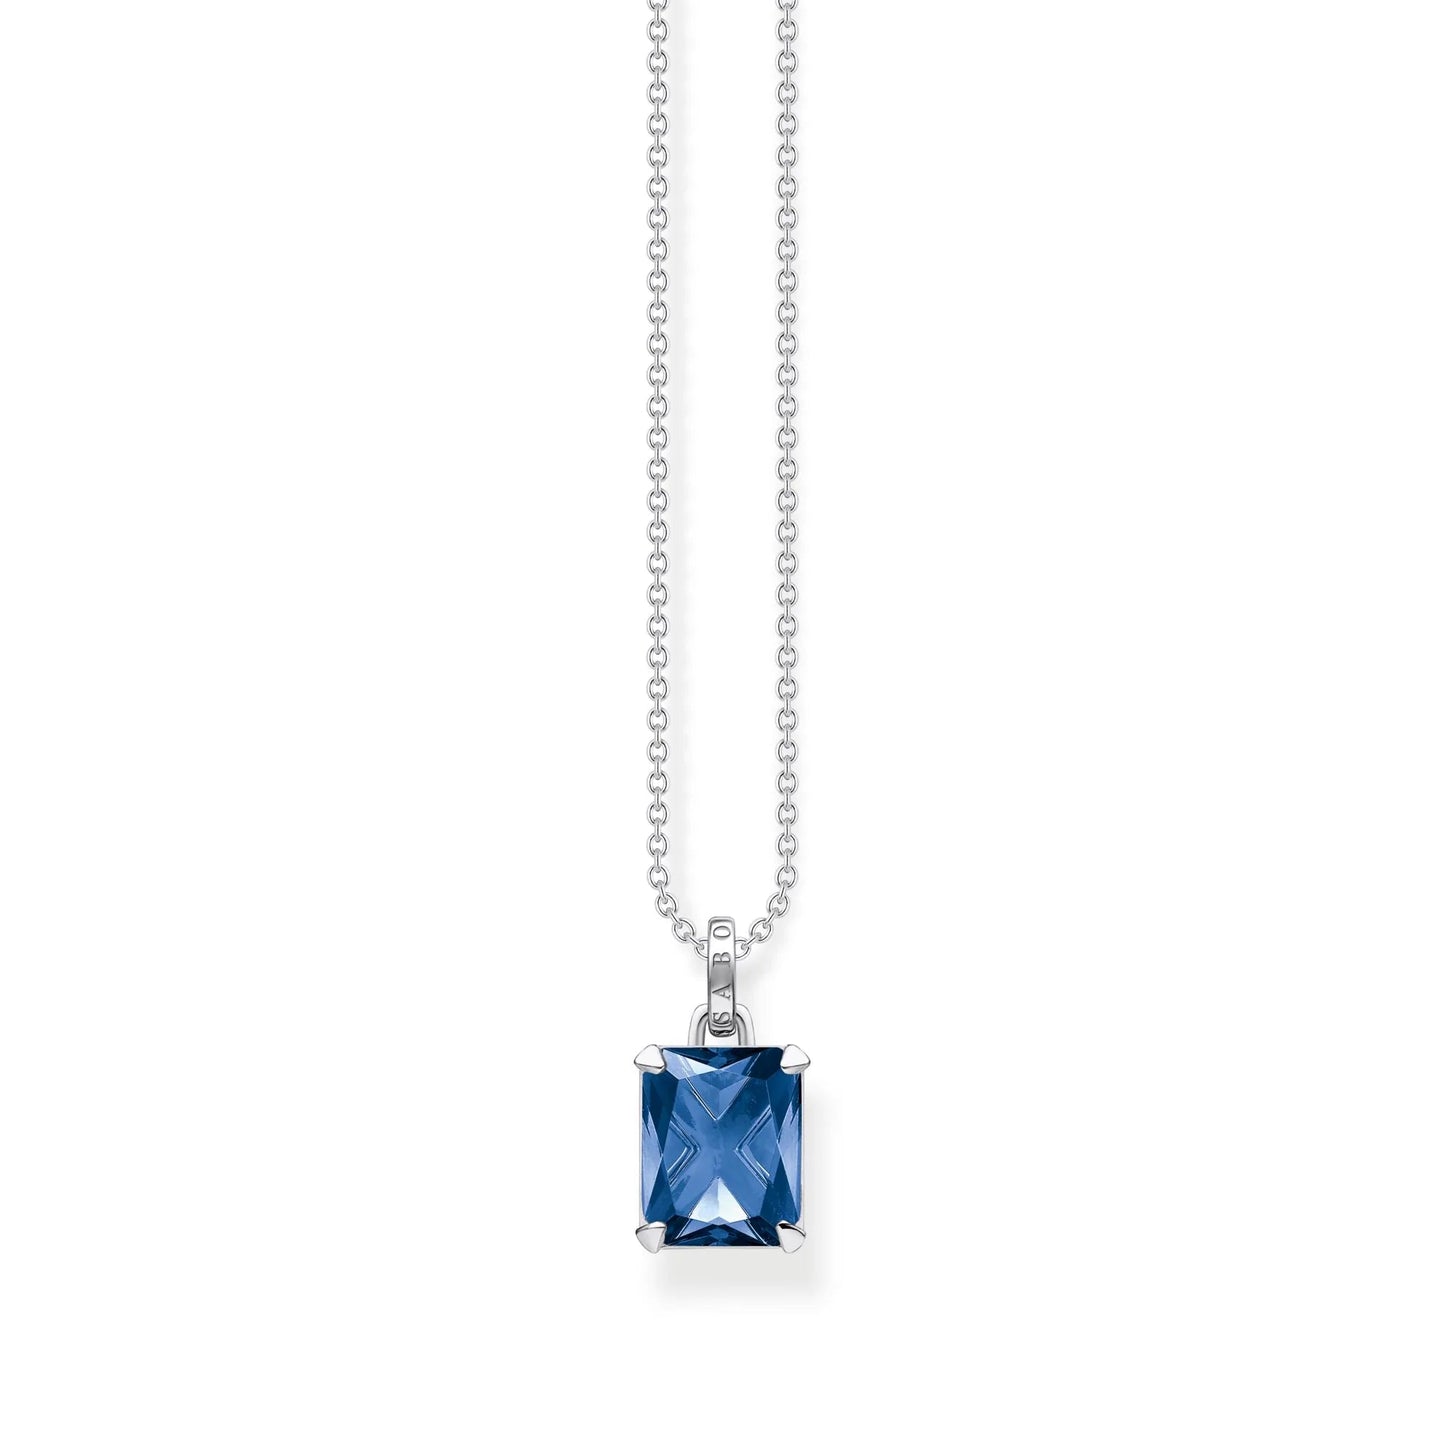 THOMAS SABO Heritage Blue Stone Necklace